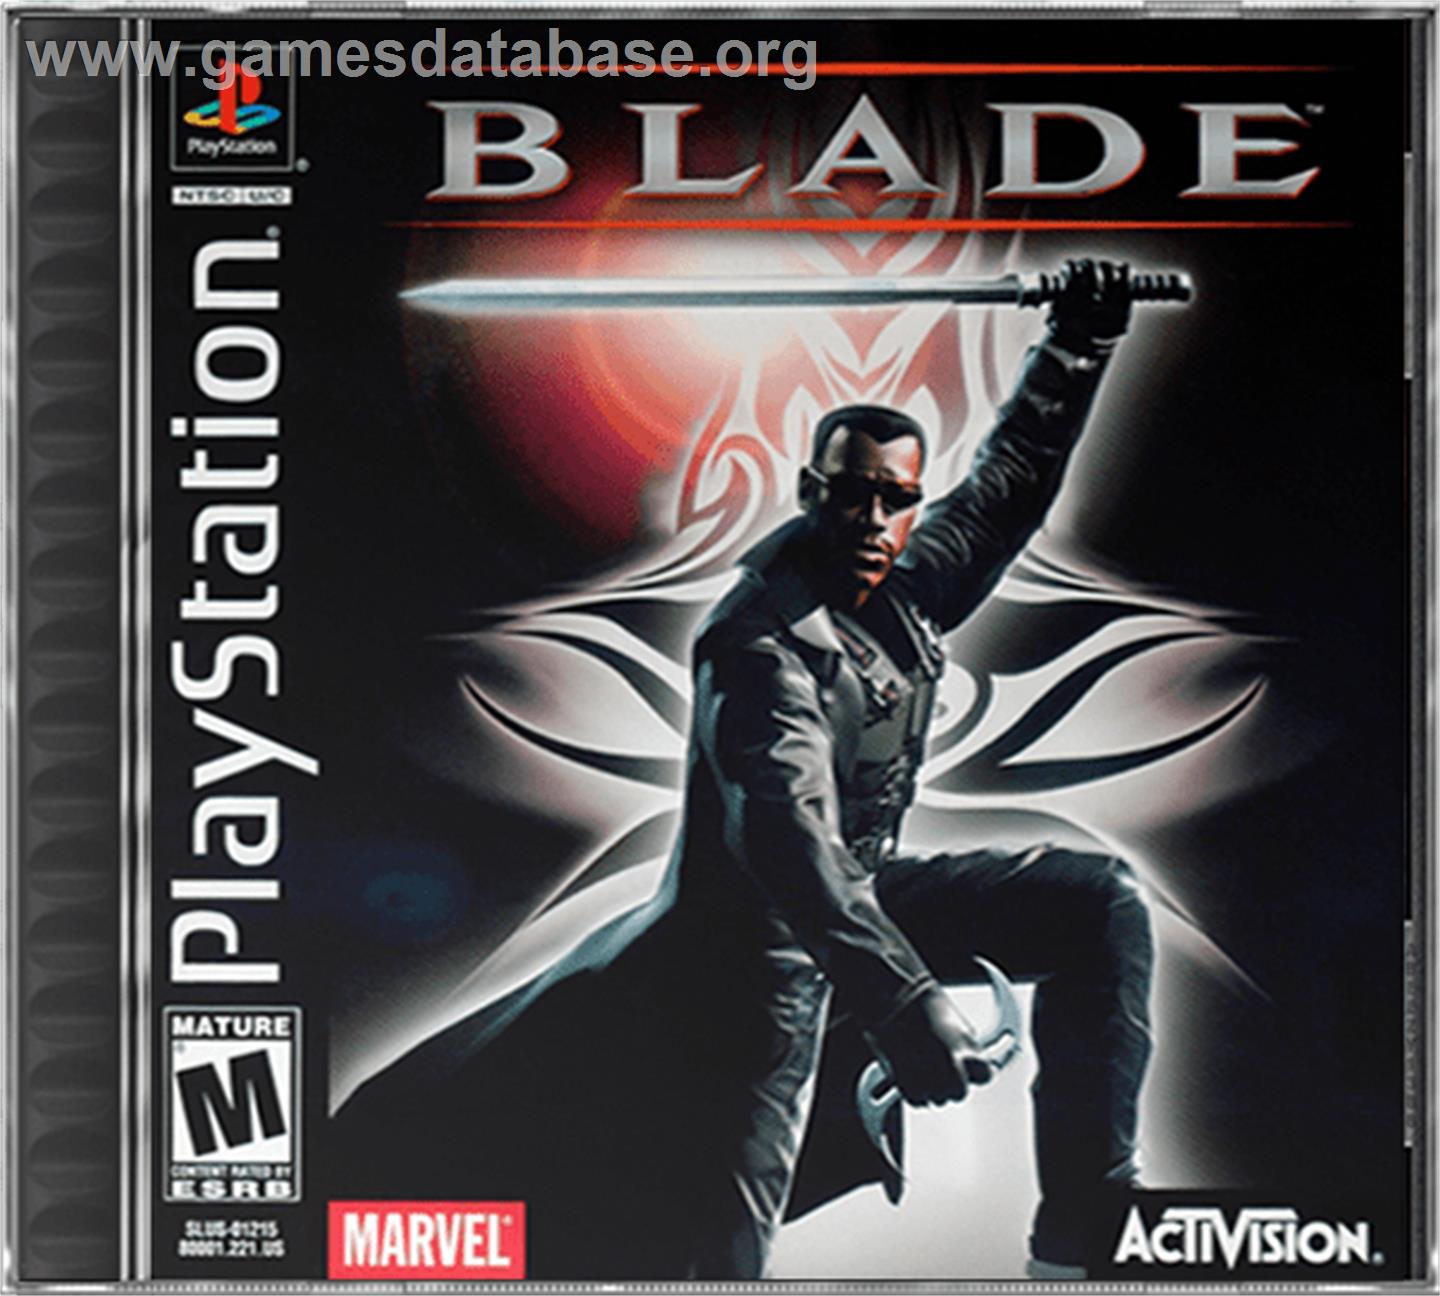 Blade - Sony Playstation - Artwork - Box